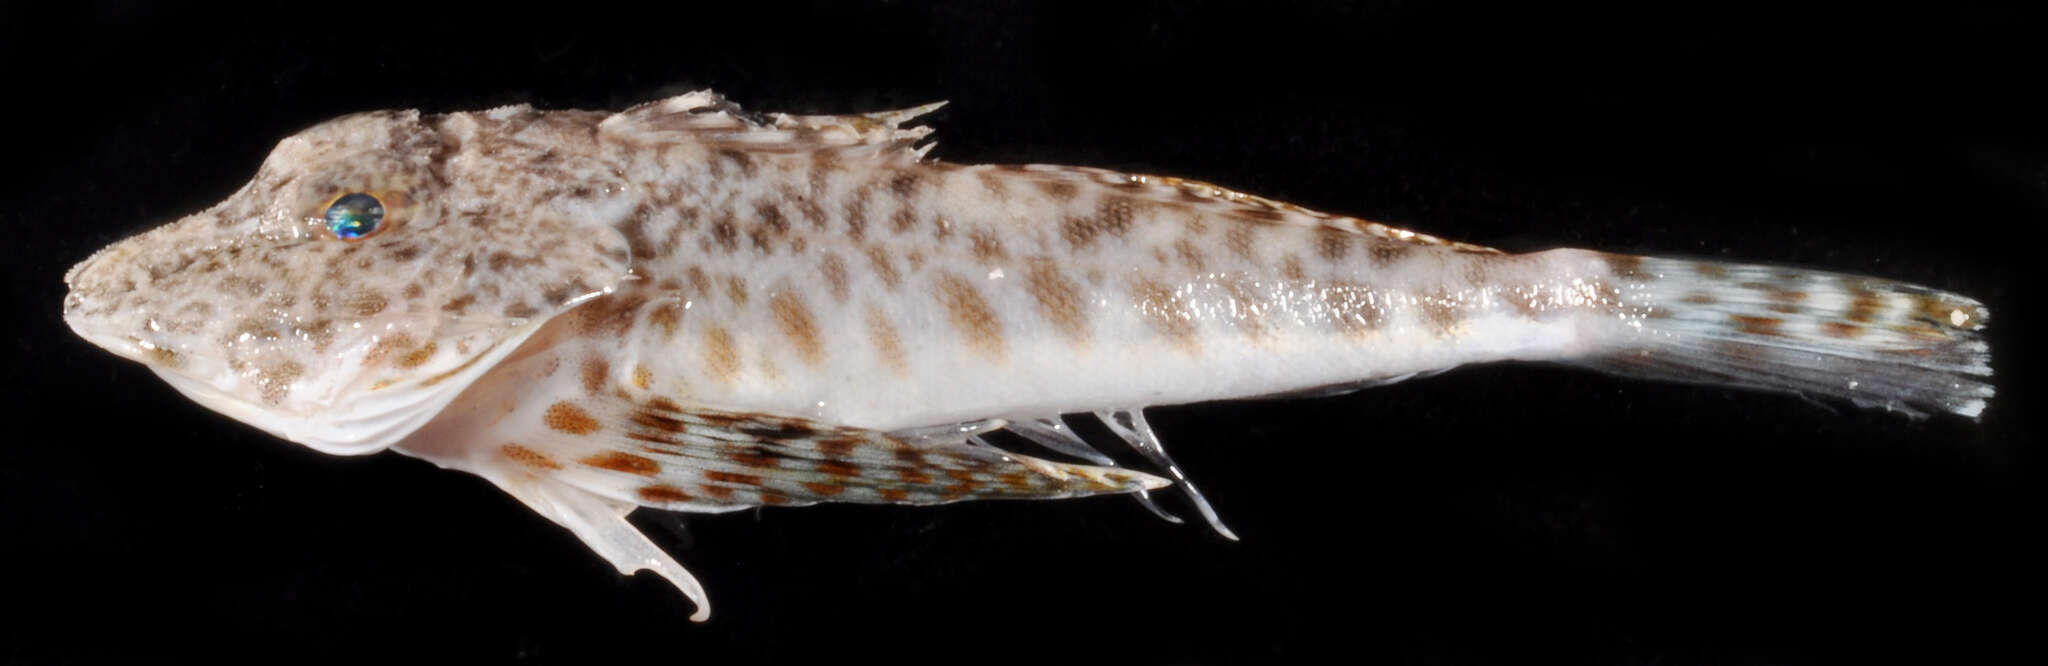 Image of Leopard searobin